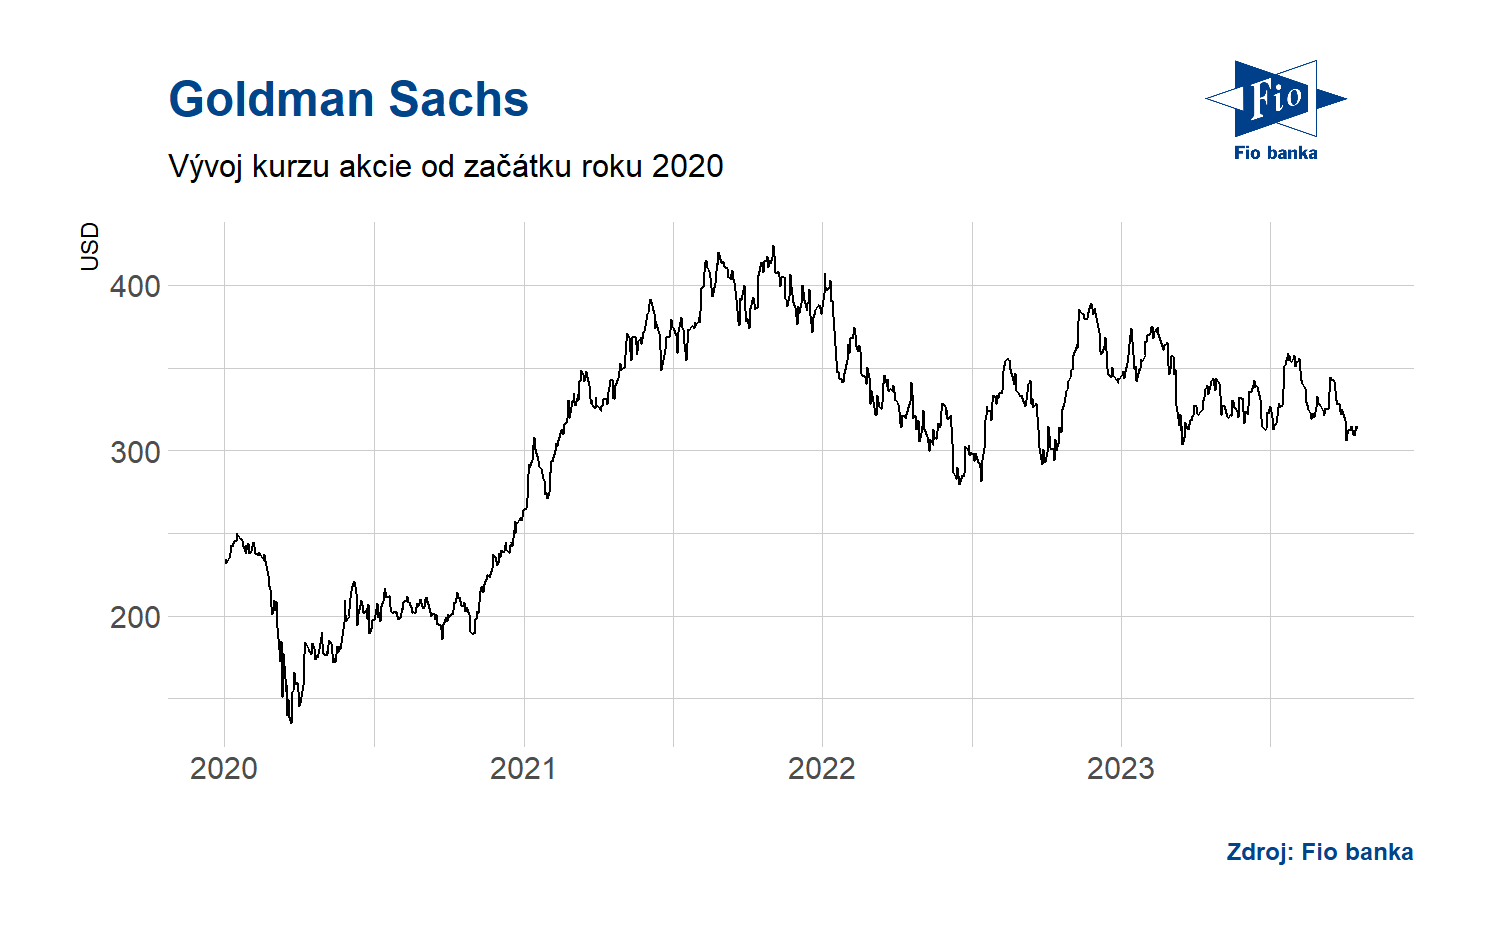 Vývoj akcie Goldman Sachs